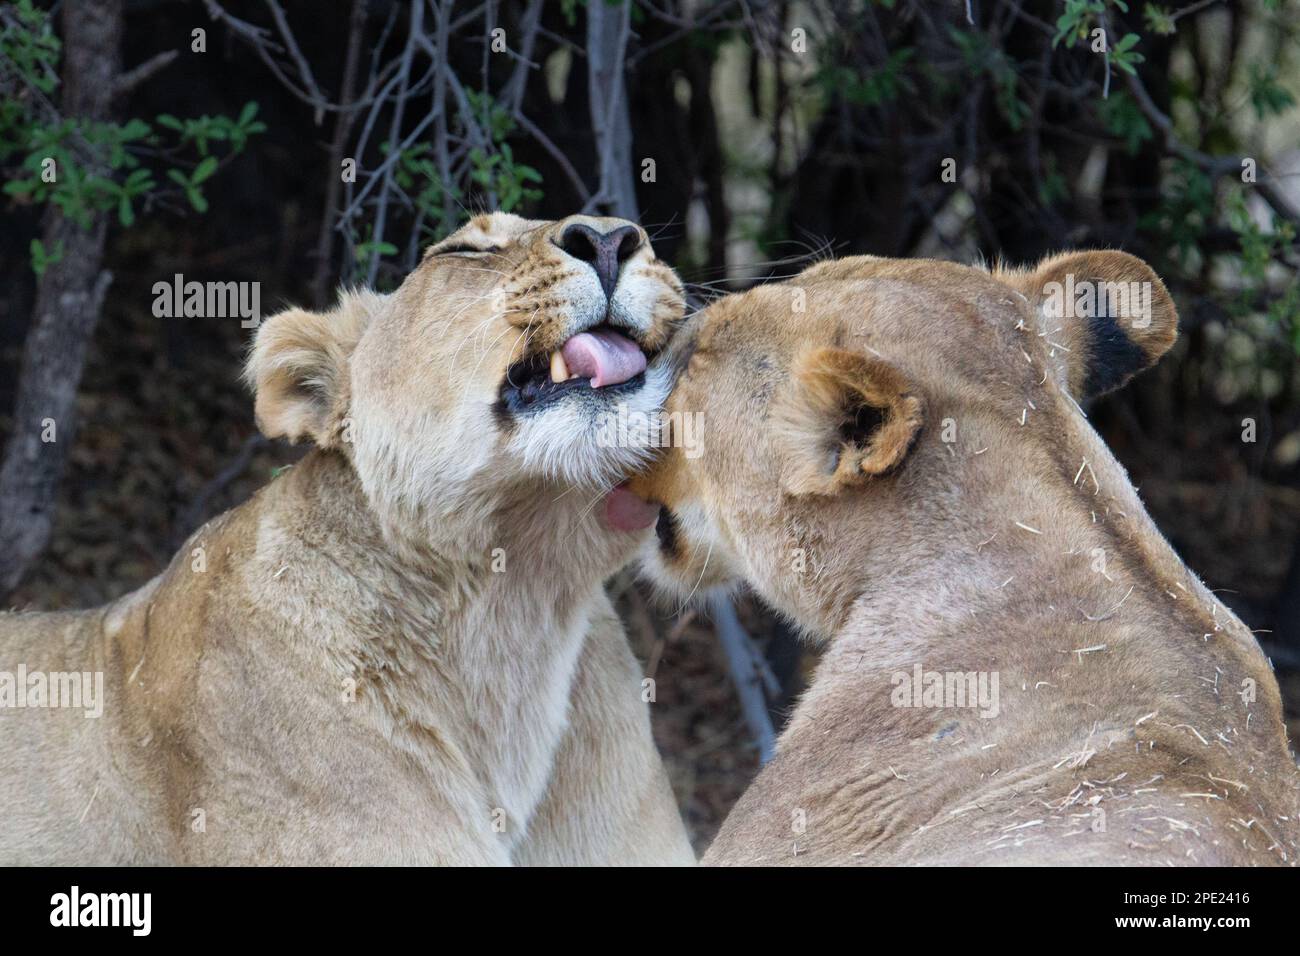 2 Lionesses, Panthera leo, ritratto, entrambi gli animali sono intimi. 1 animale lecca il viso, la testa dell'altra femmina. Delta dell'Okavango, Botswana, Africa Foto Stock